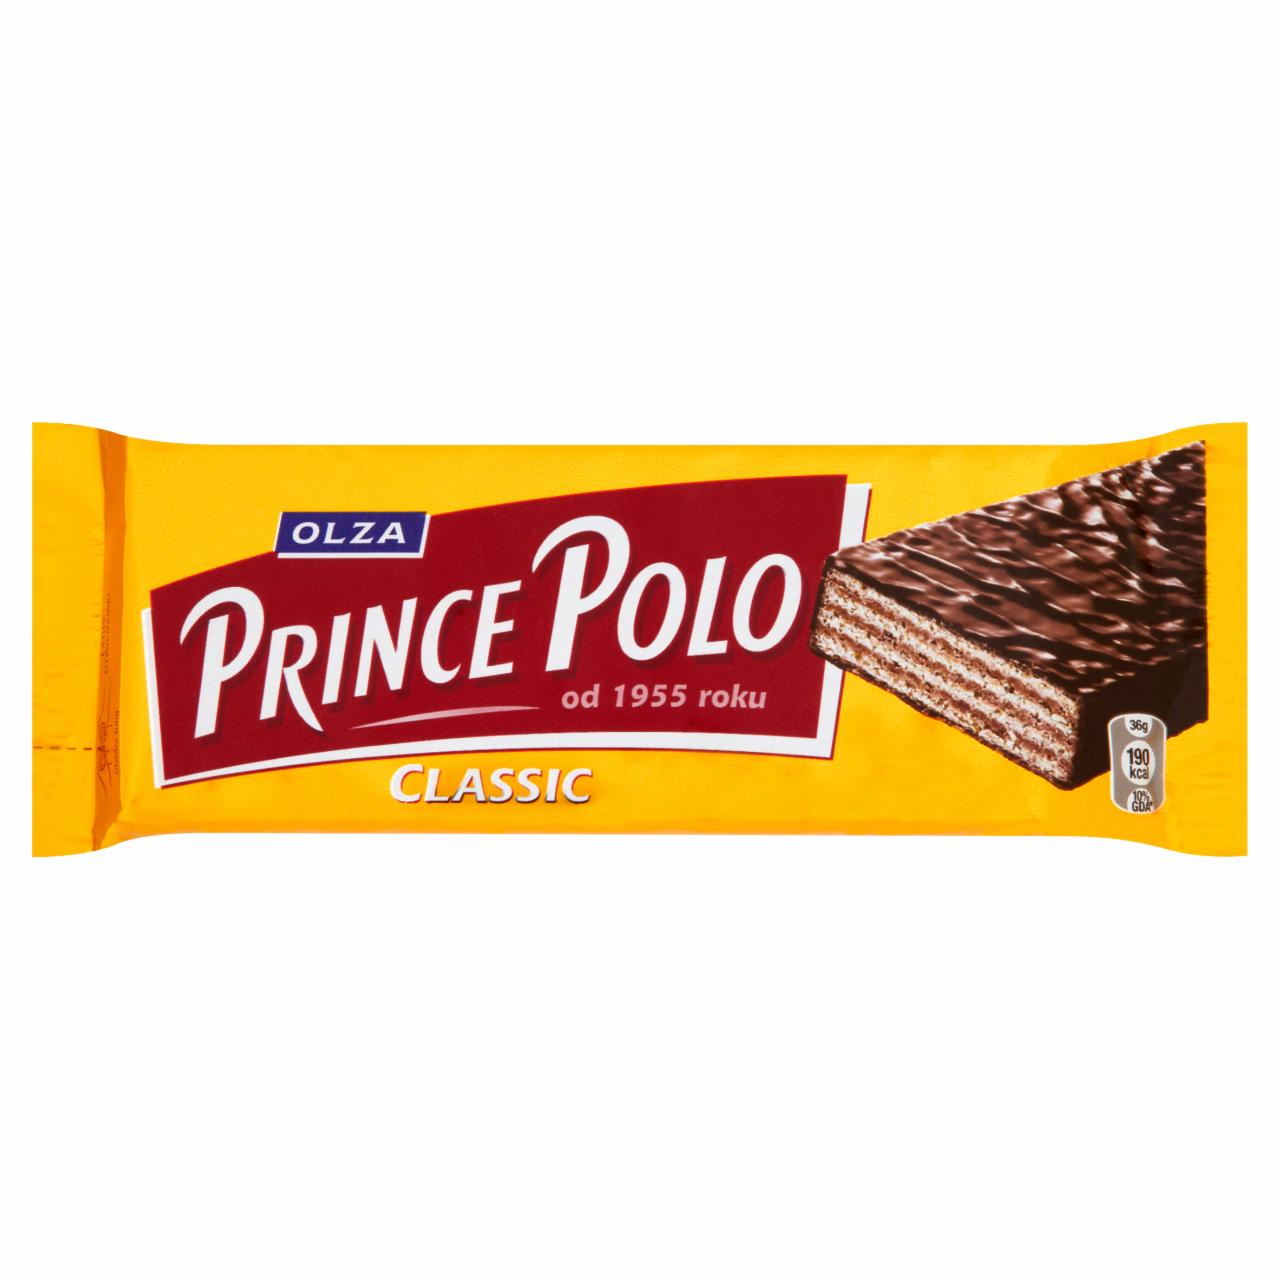 Zdjęcia - Olza Prince Polo Classic Kruchy wafelek z kremem kakaowym oblany czekoladą 36 g